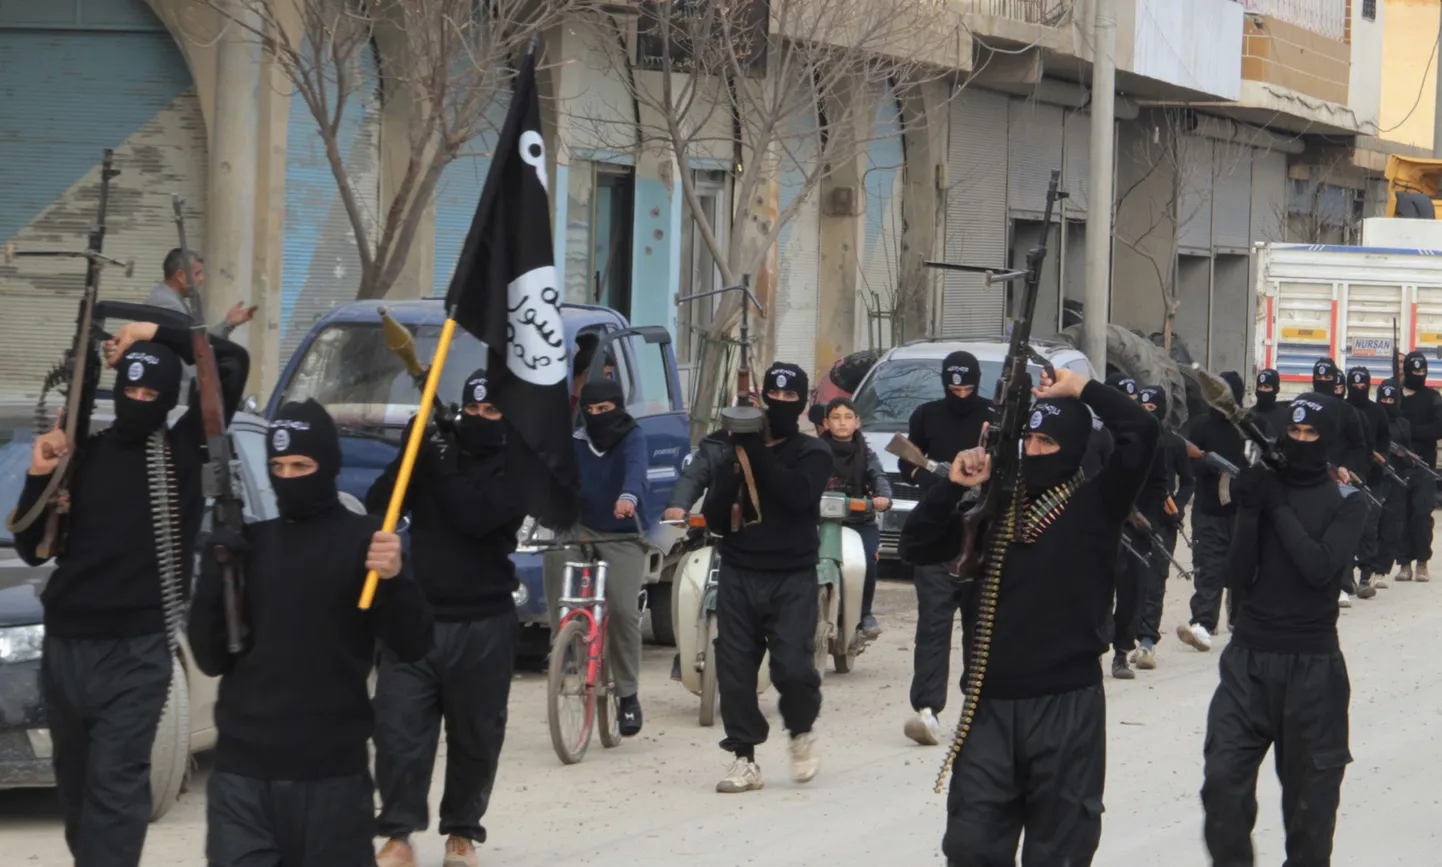 Al-Qaedaga seotud rühmituse ISIL võitlejad